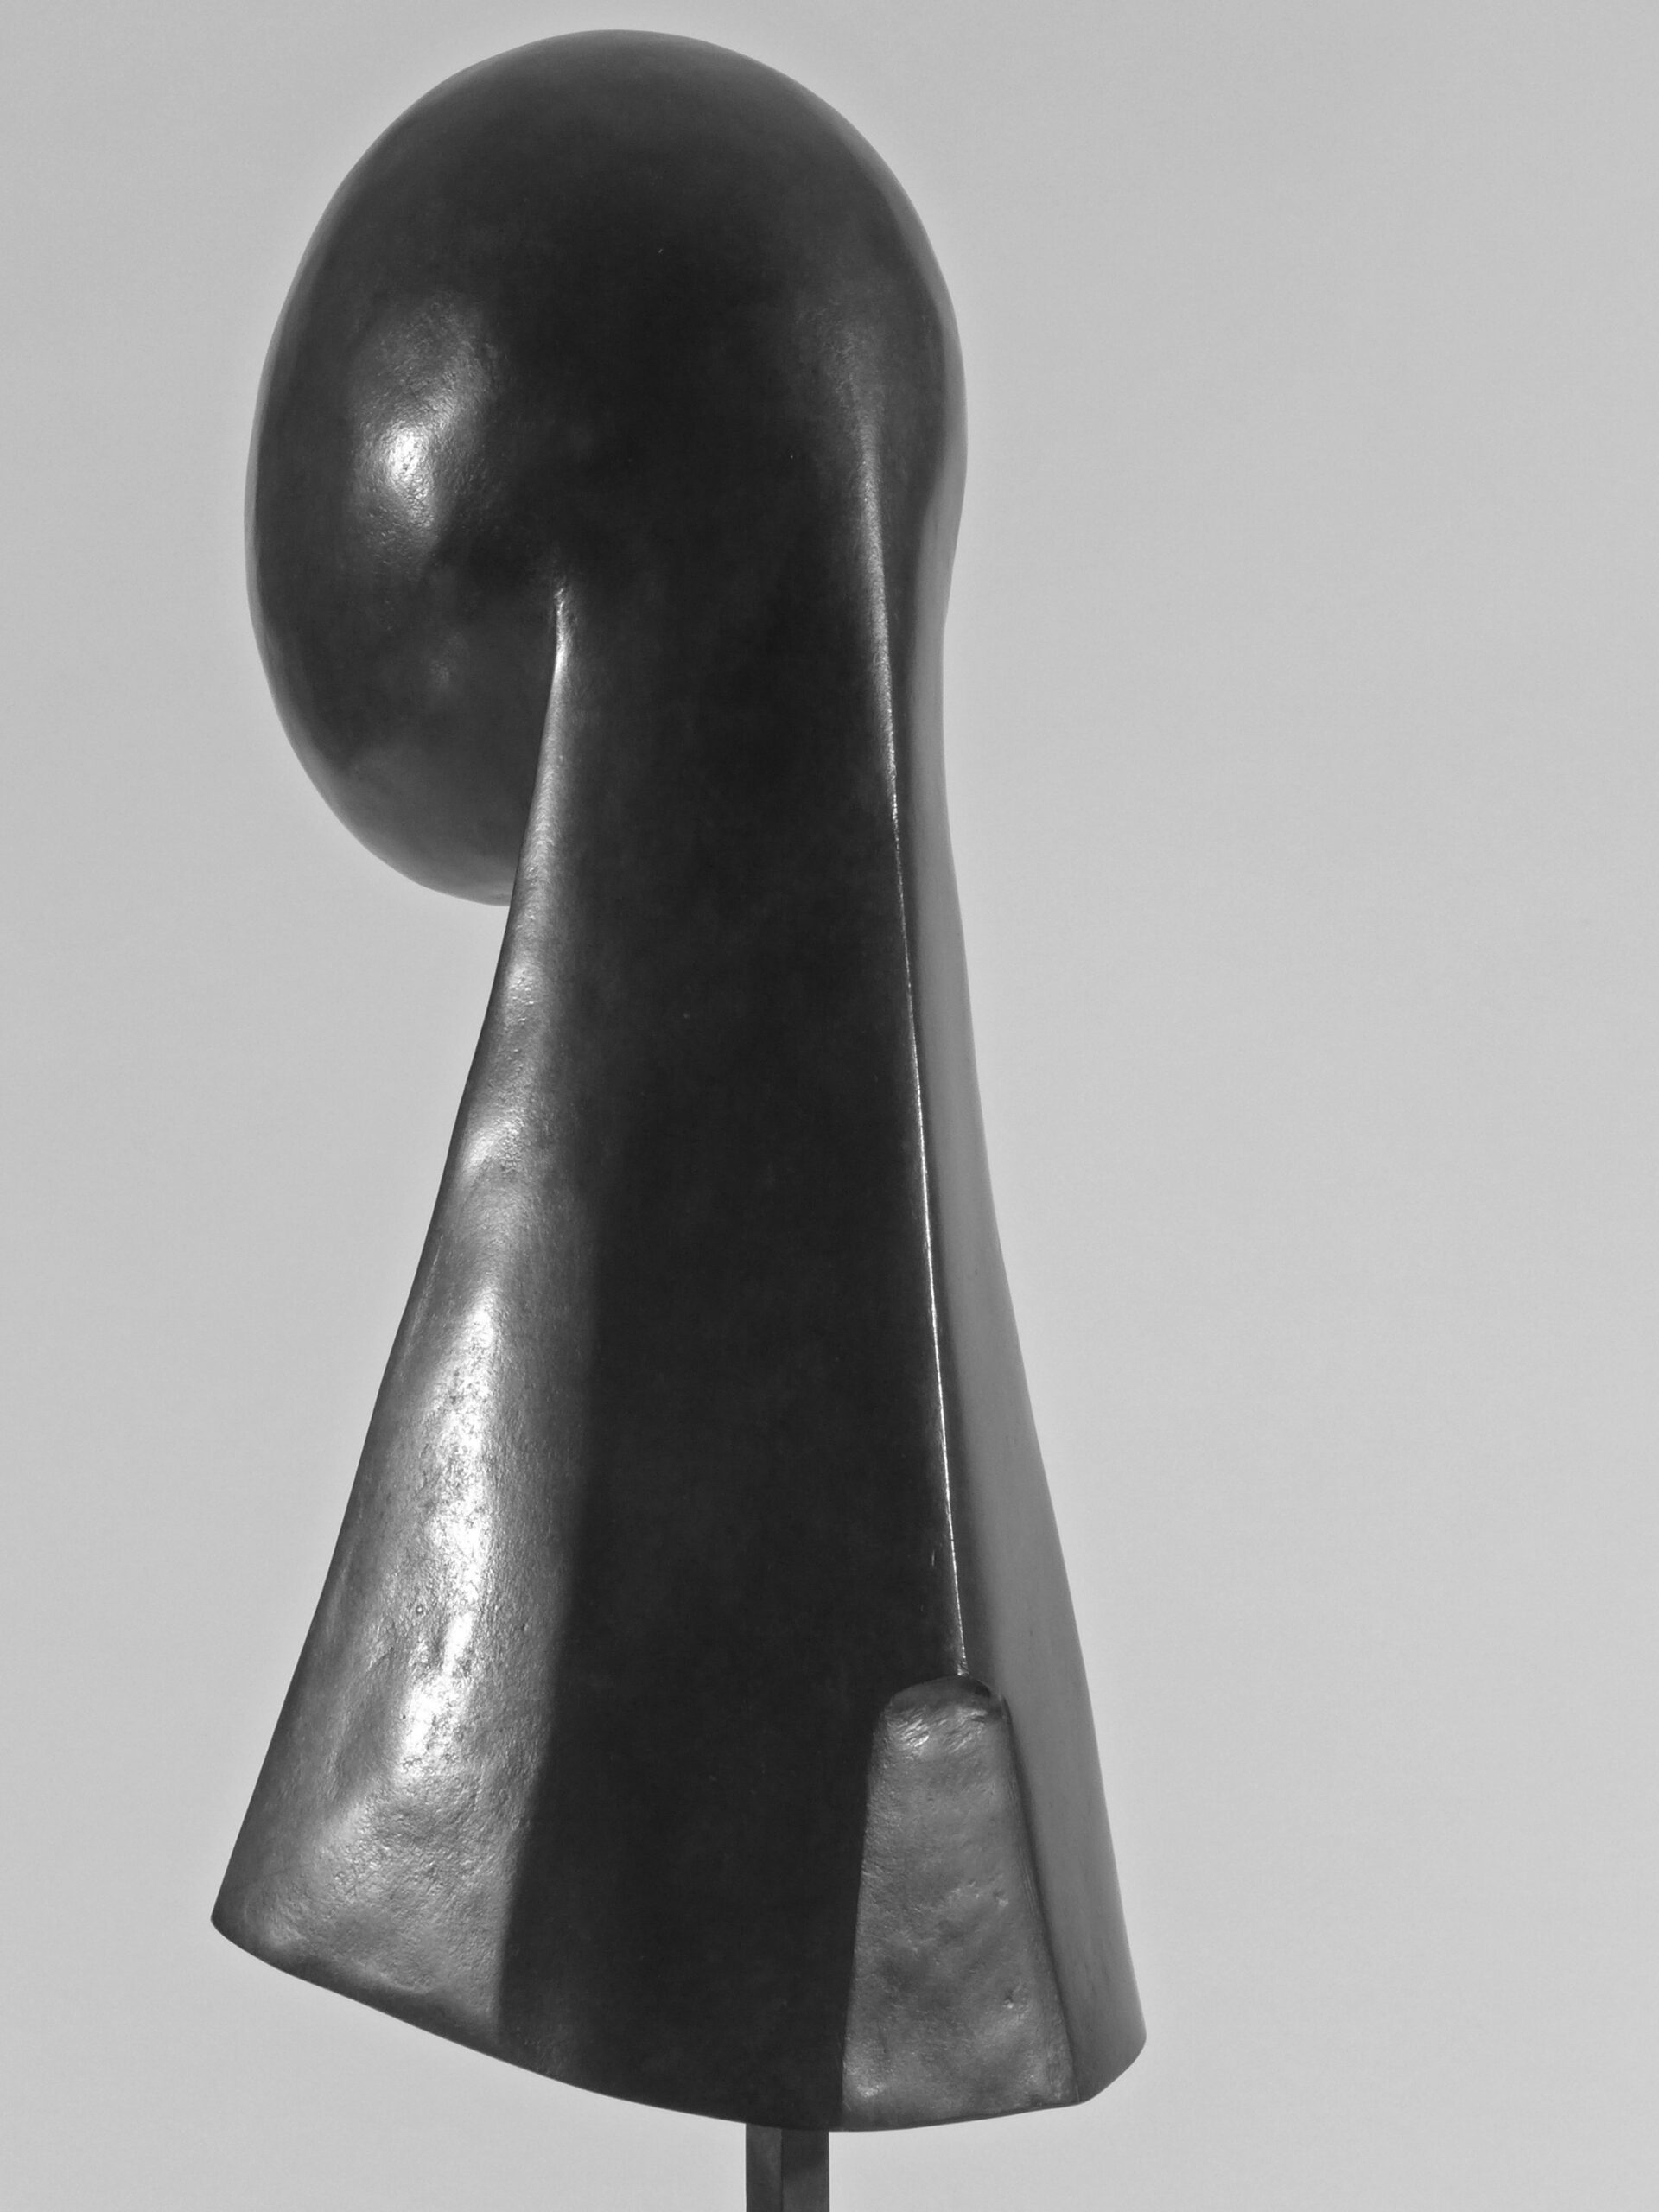 4 L’Avarice, 1986, bronze, h 62 cm